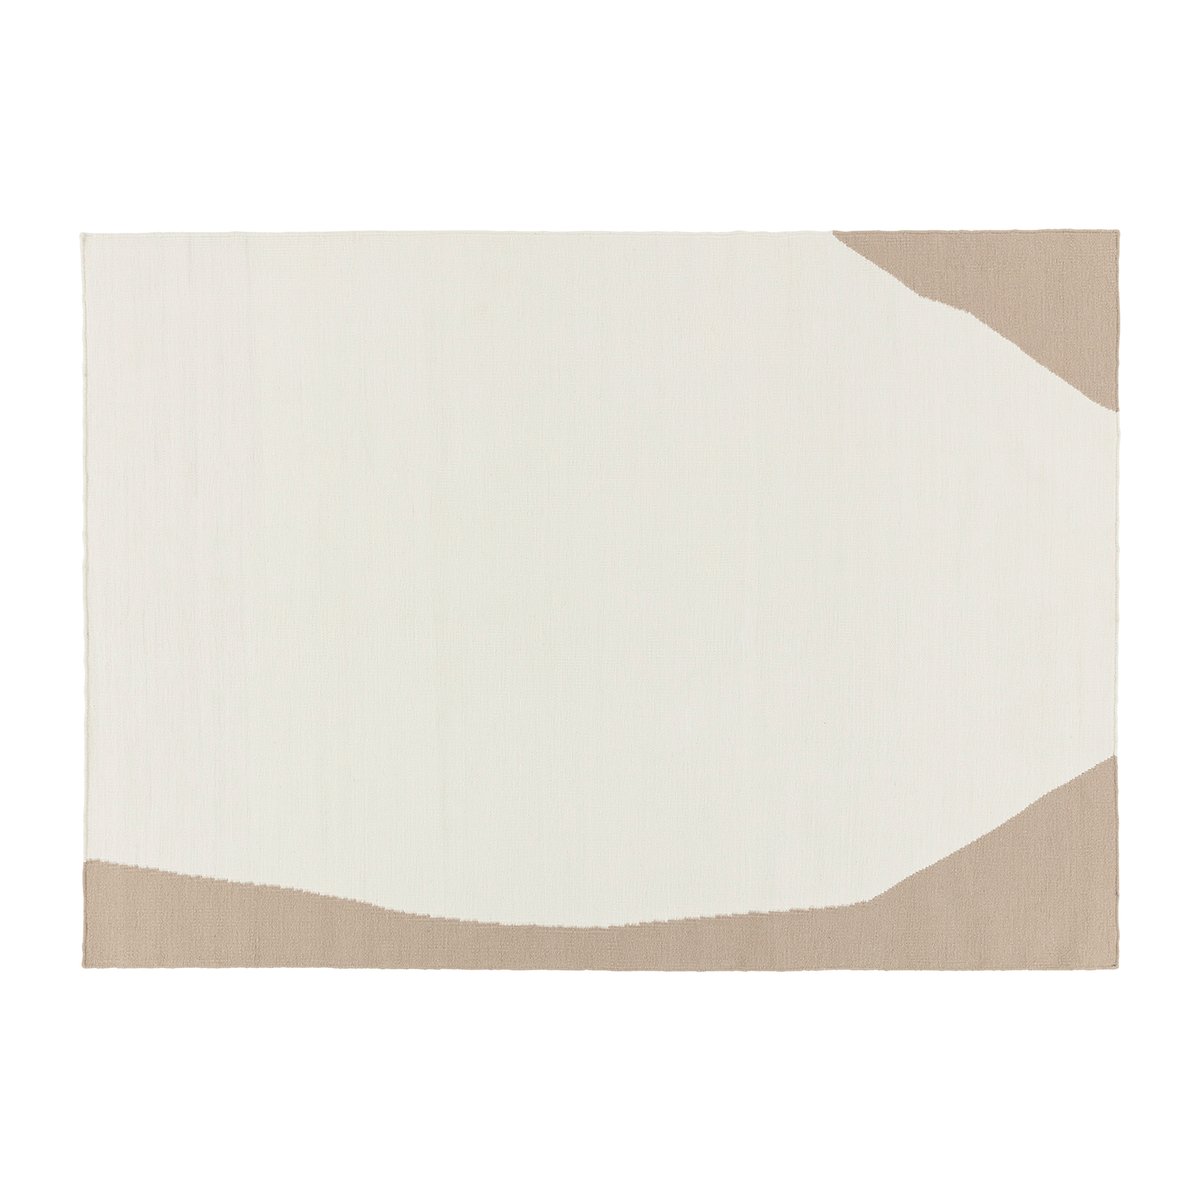 Scandi Living Flow kelim vloerkleed wit-beige 200x300 cm